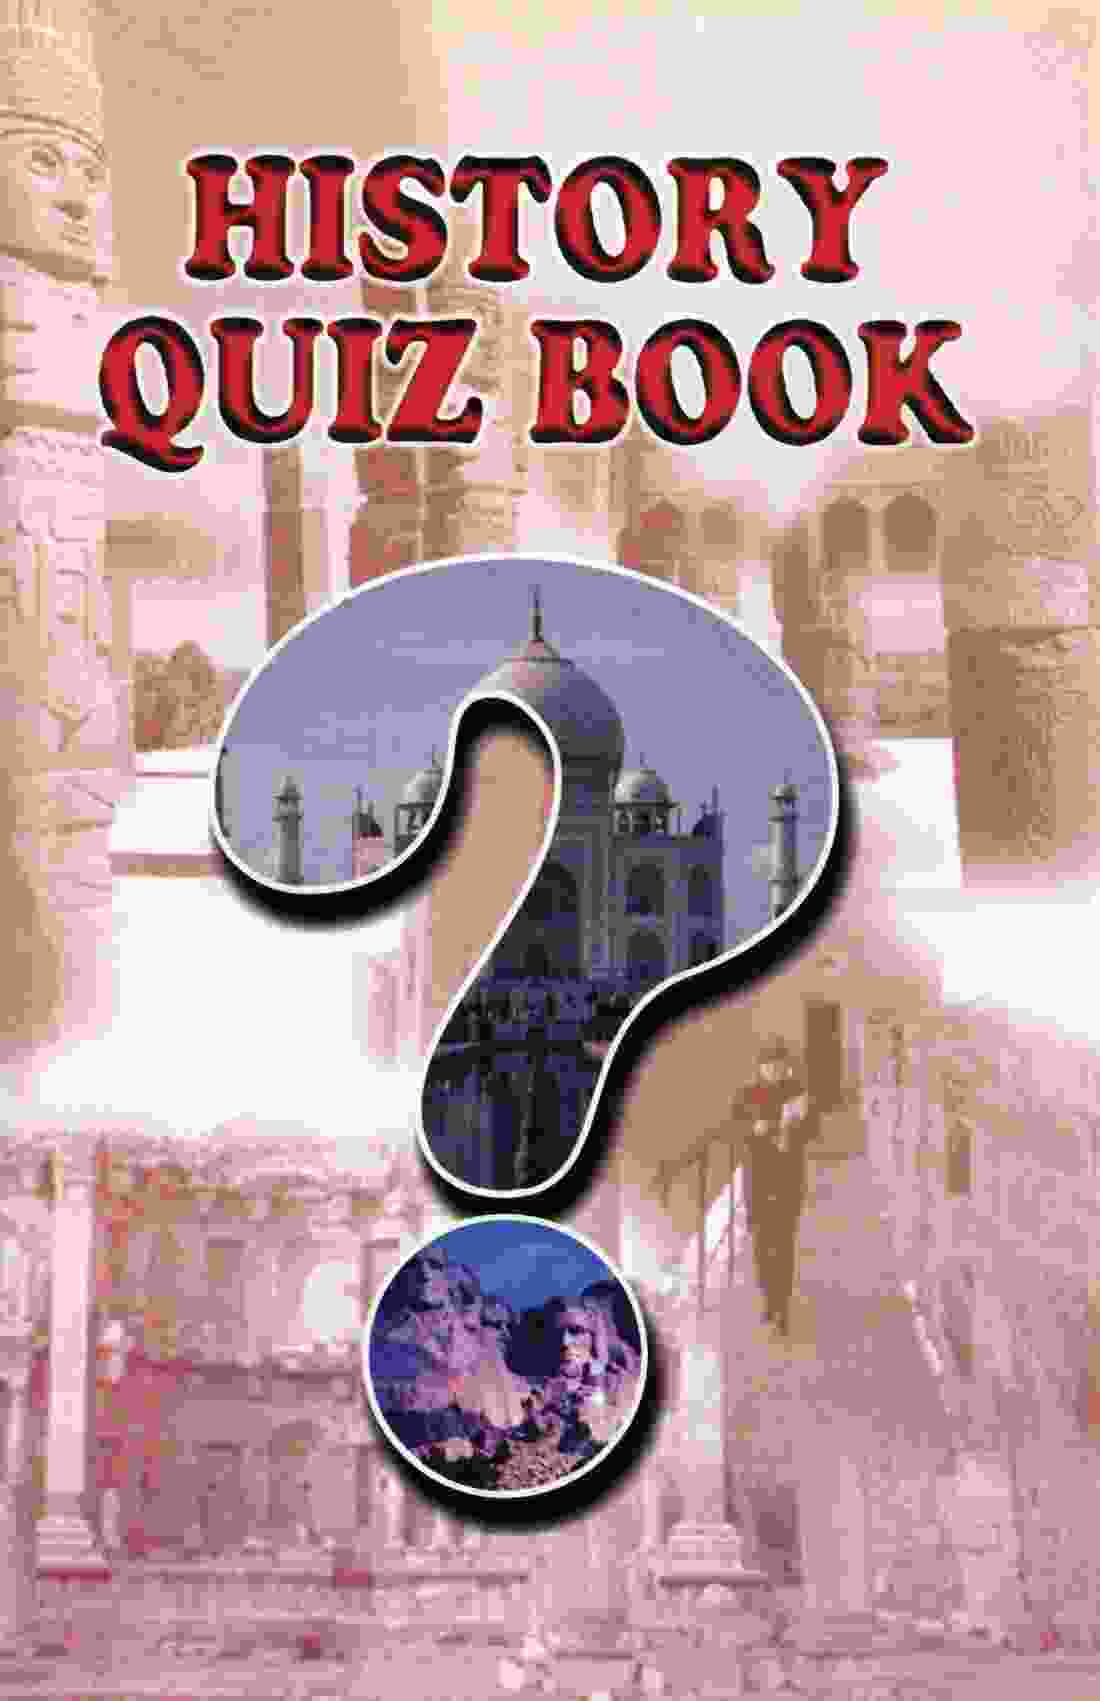 History Quiz Book